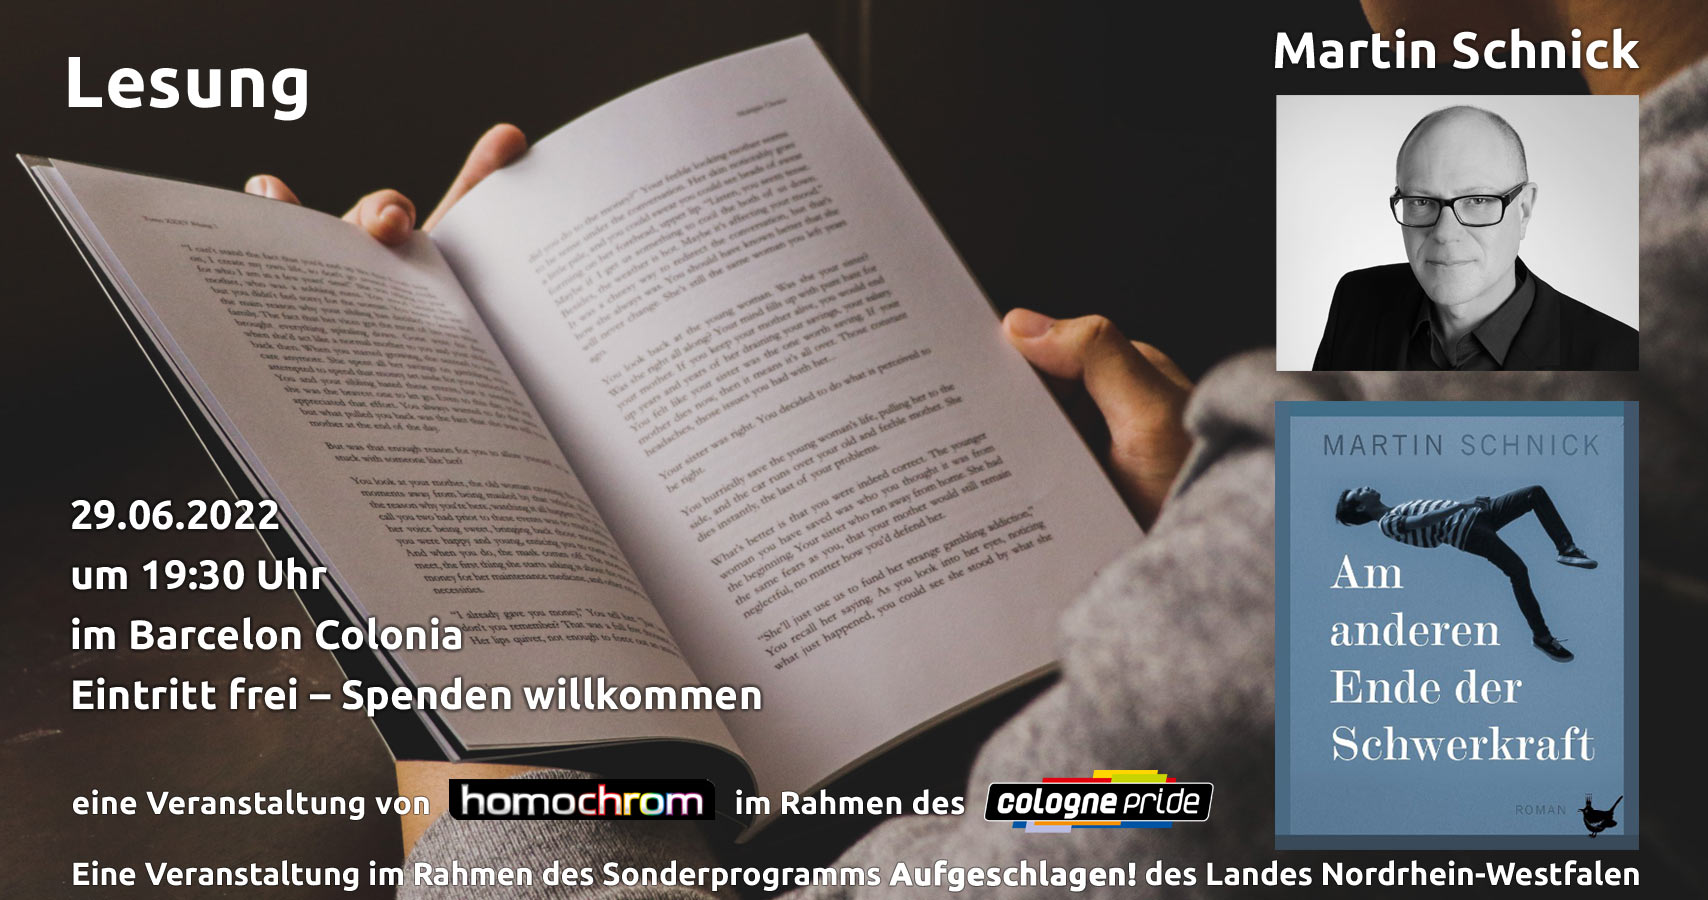 Lesung von Martin Schnick am 29.06.2022 zum ColognePride